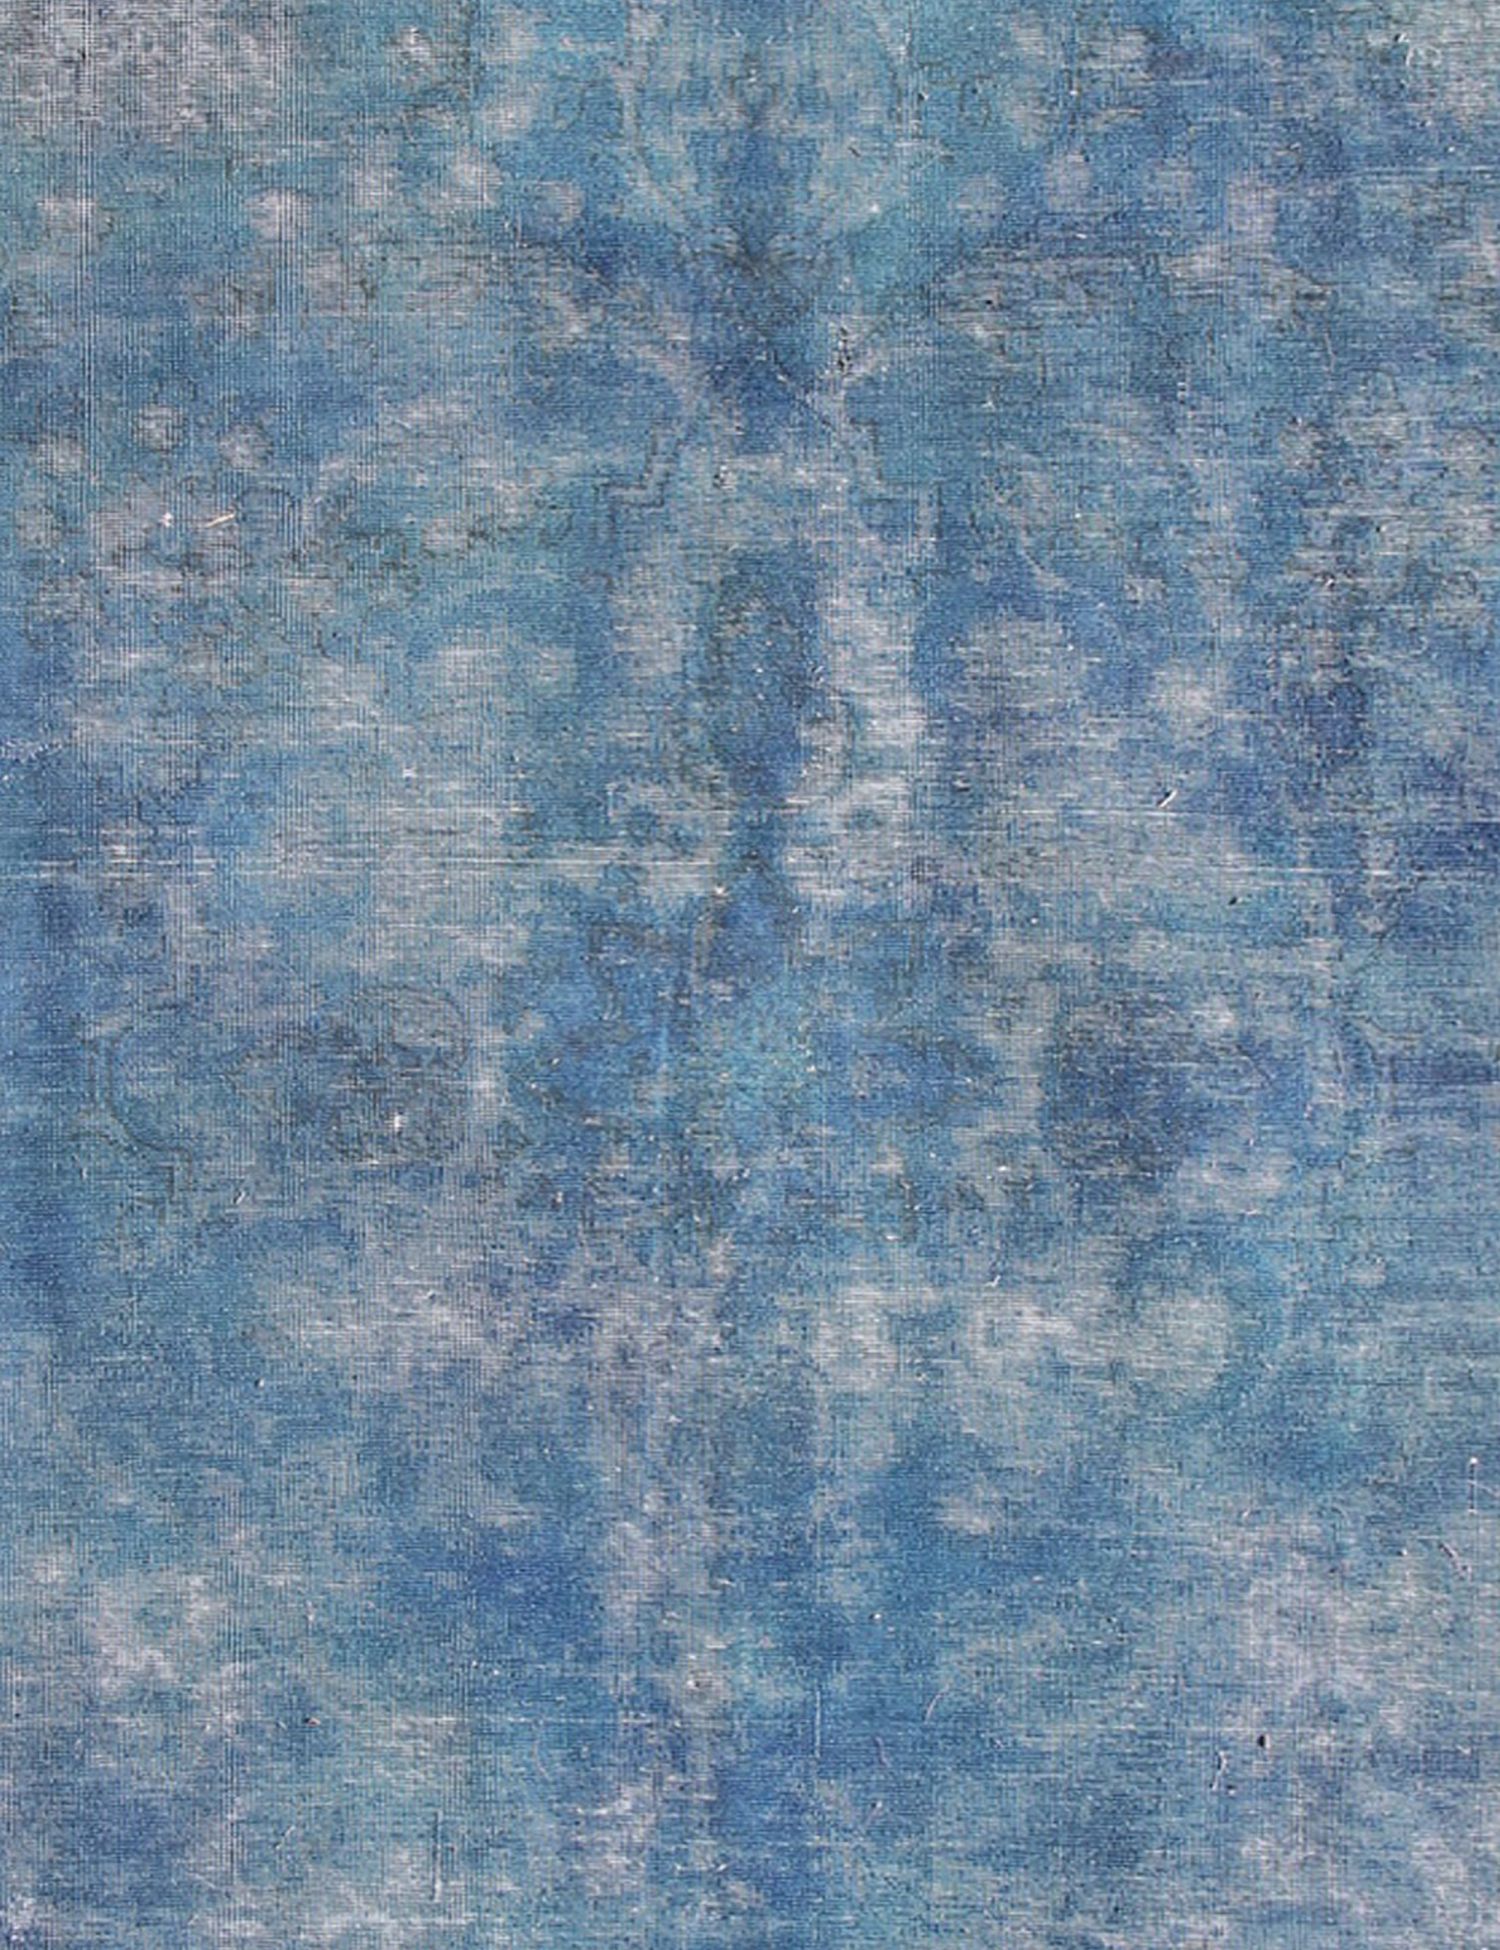 Persian Vintage Carpet  blue <br/>280 x 200 cm